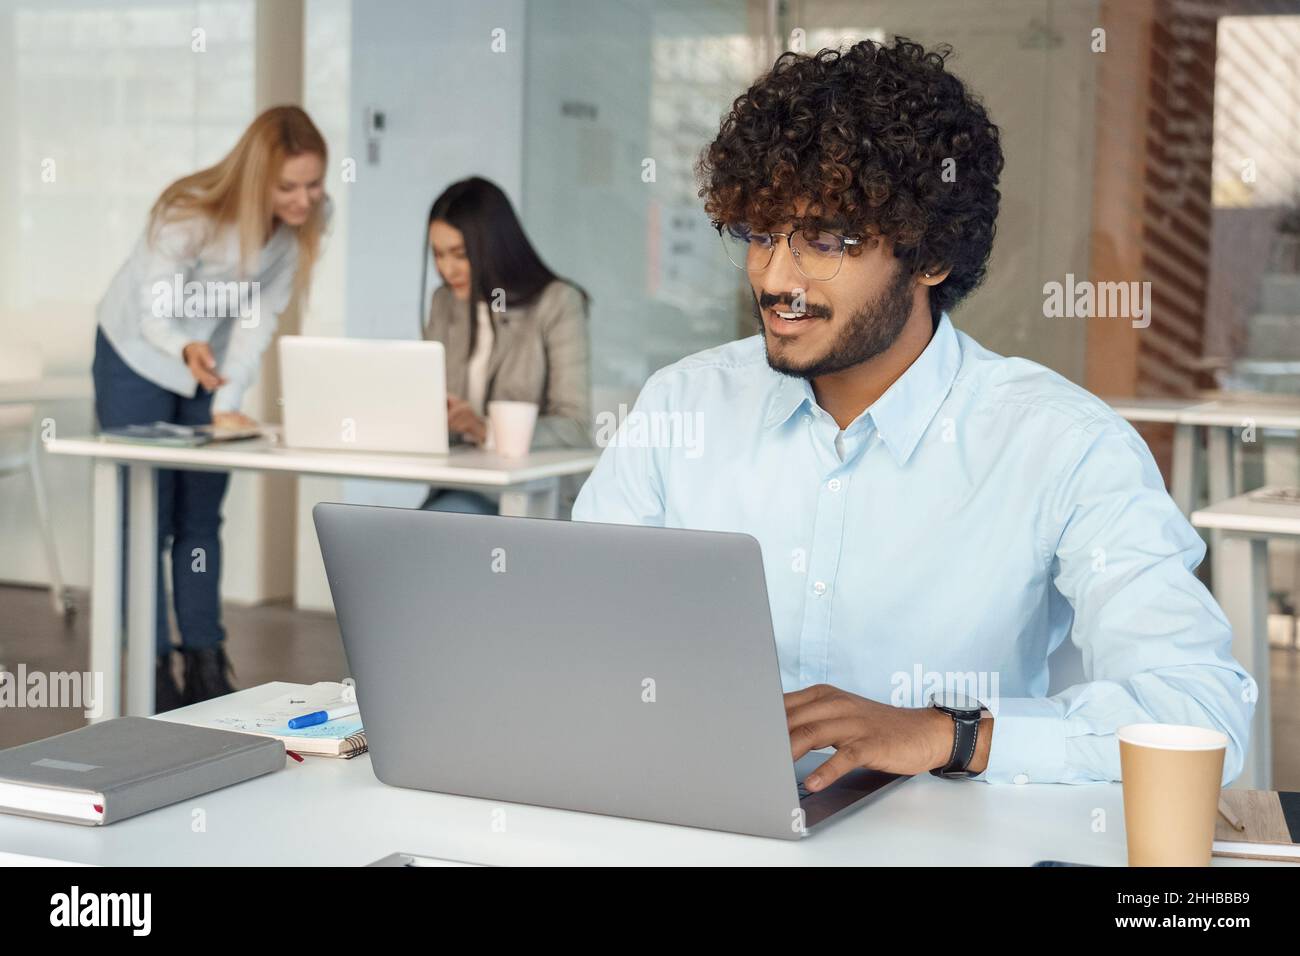 Ein vielbeschäftigter inder arbeitet am Schreibtisch am Laptop, während ein Kollege ein Brainstorming über den Hintergrund anlegt Stockfoto